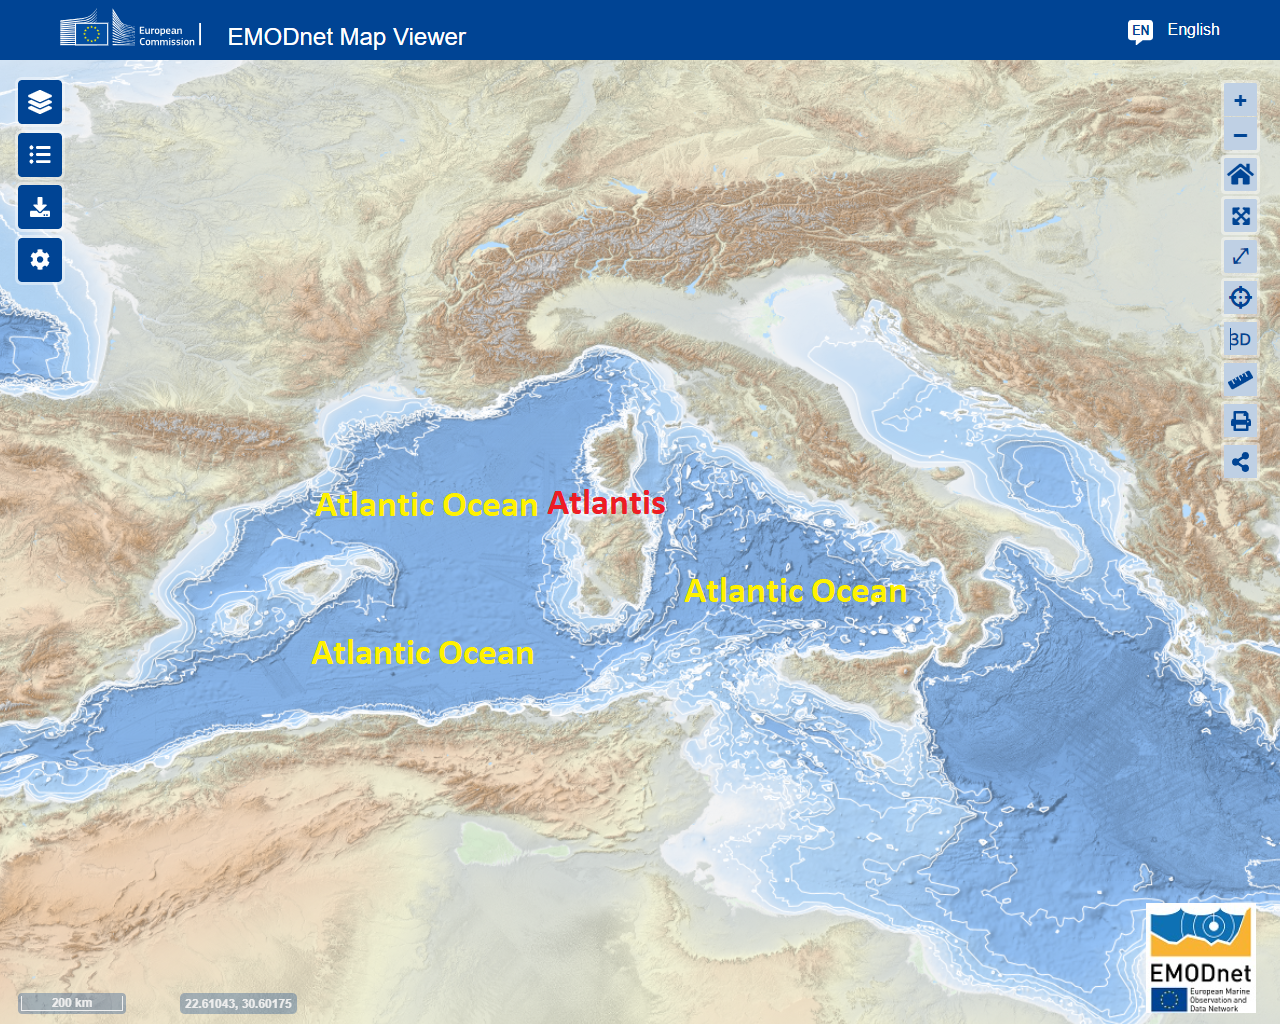 Paleoliittisen Atlantin valtameren kolmiulotteinen syvyys, joka tunnetaan nykyään nimellä Välimeri